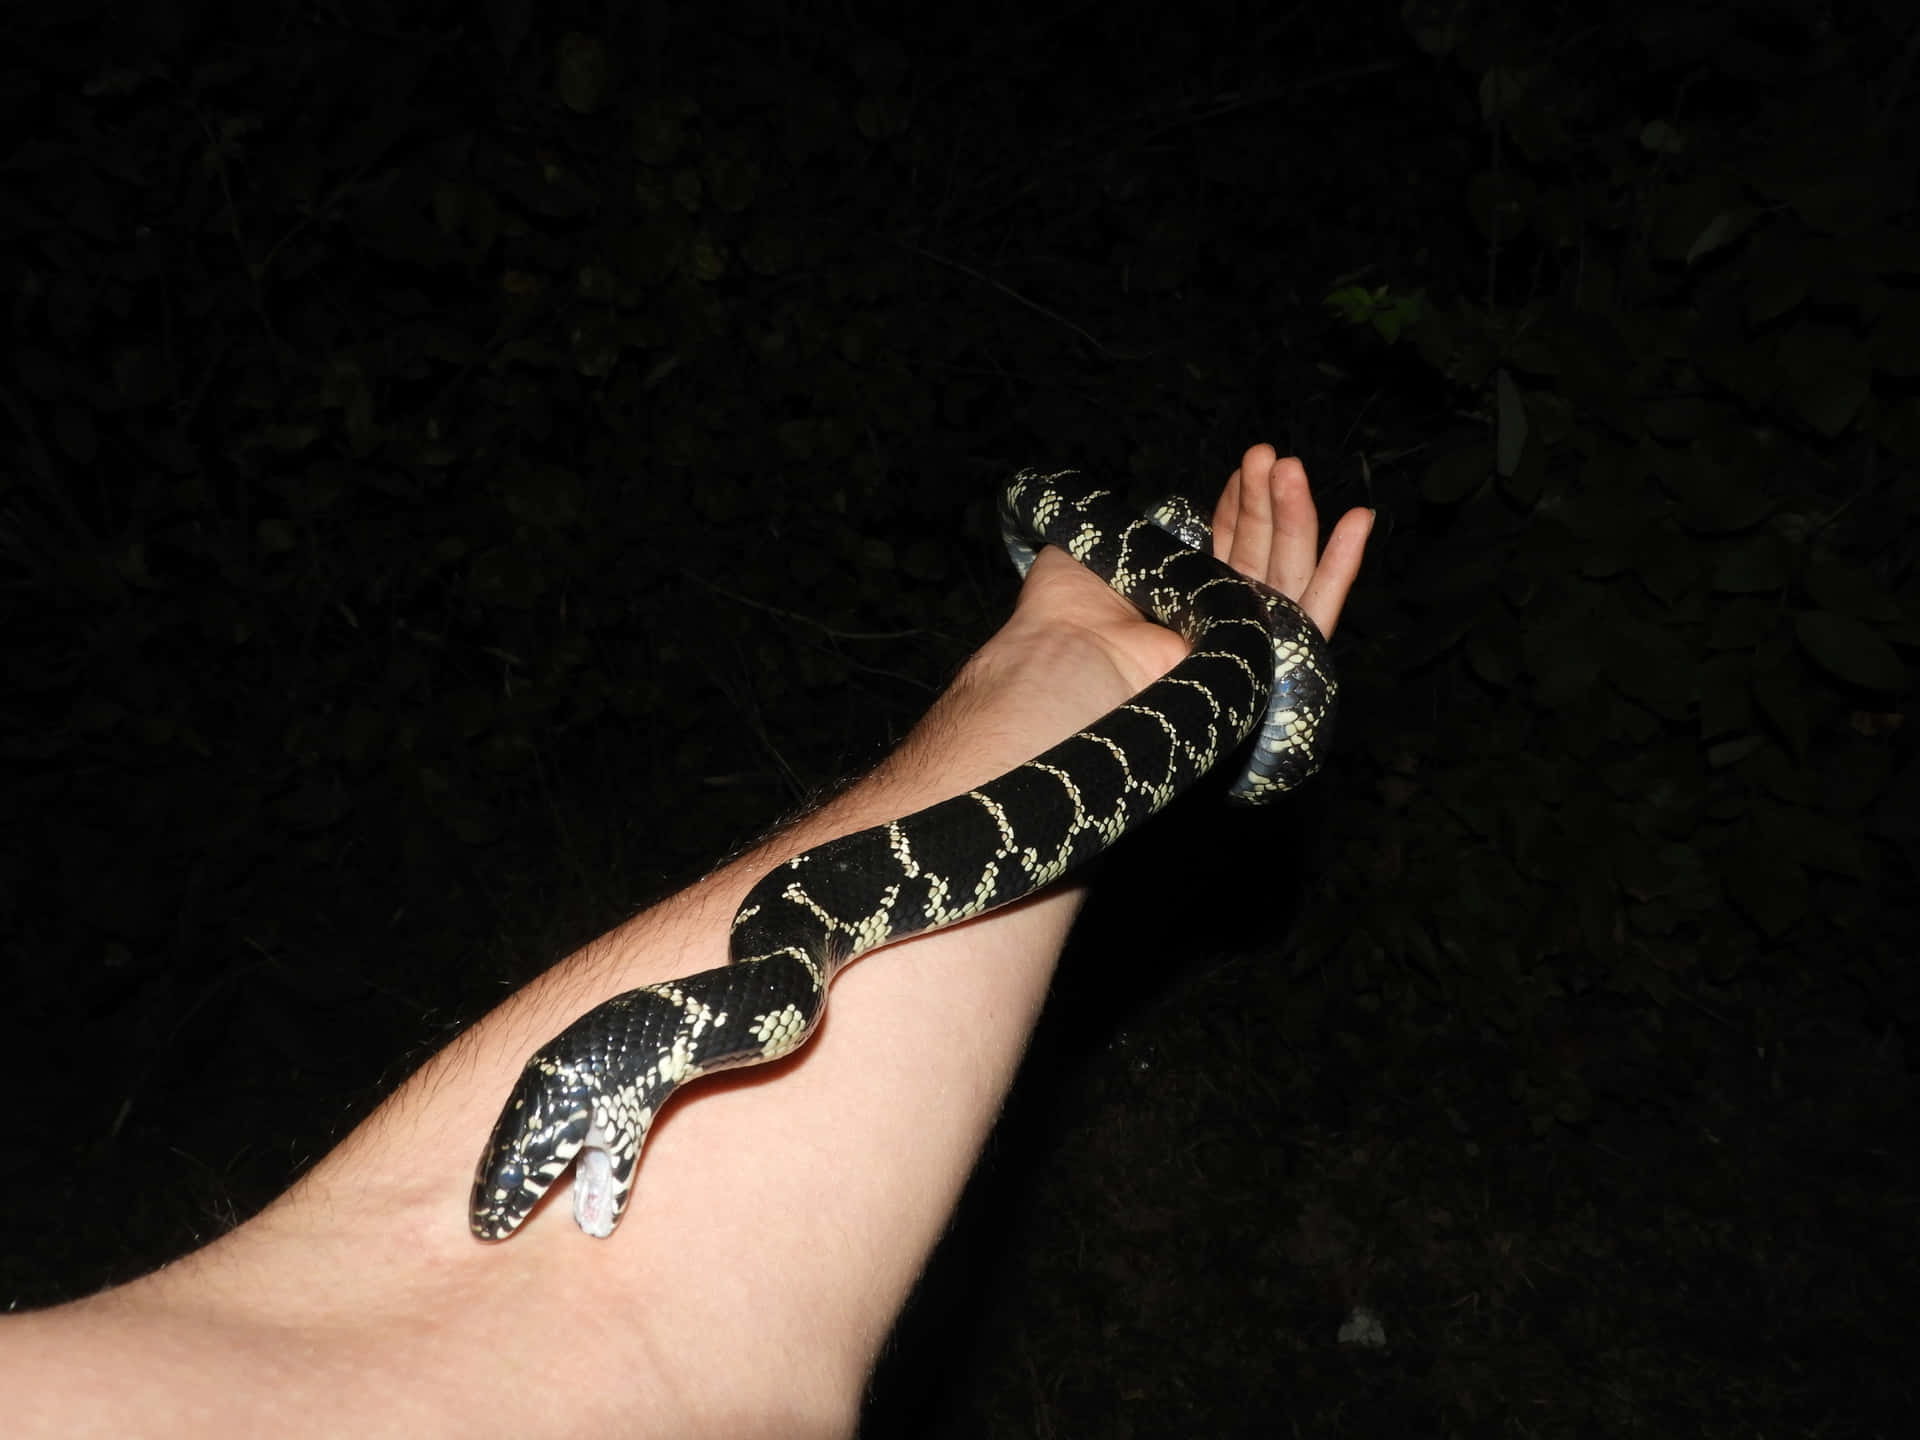 Eineschwarz-weiße Schlange Wird In Einer Person Handgehalten.